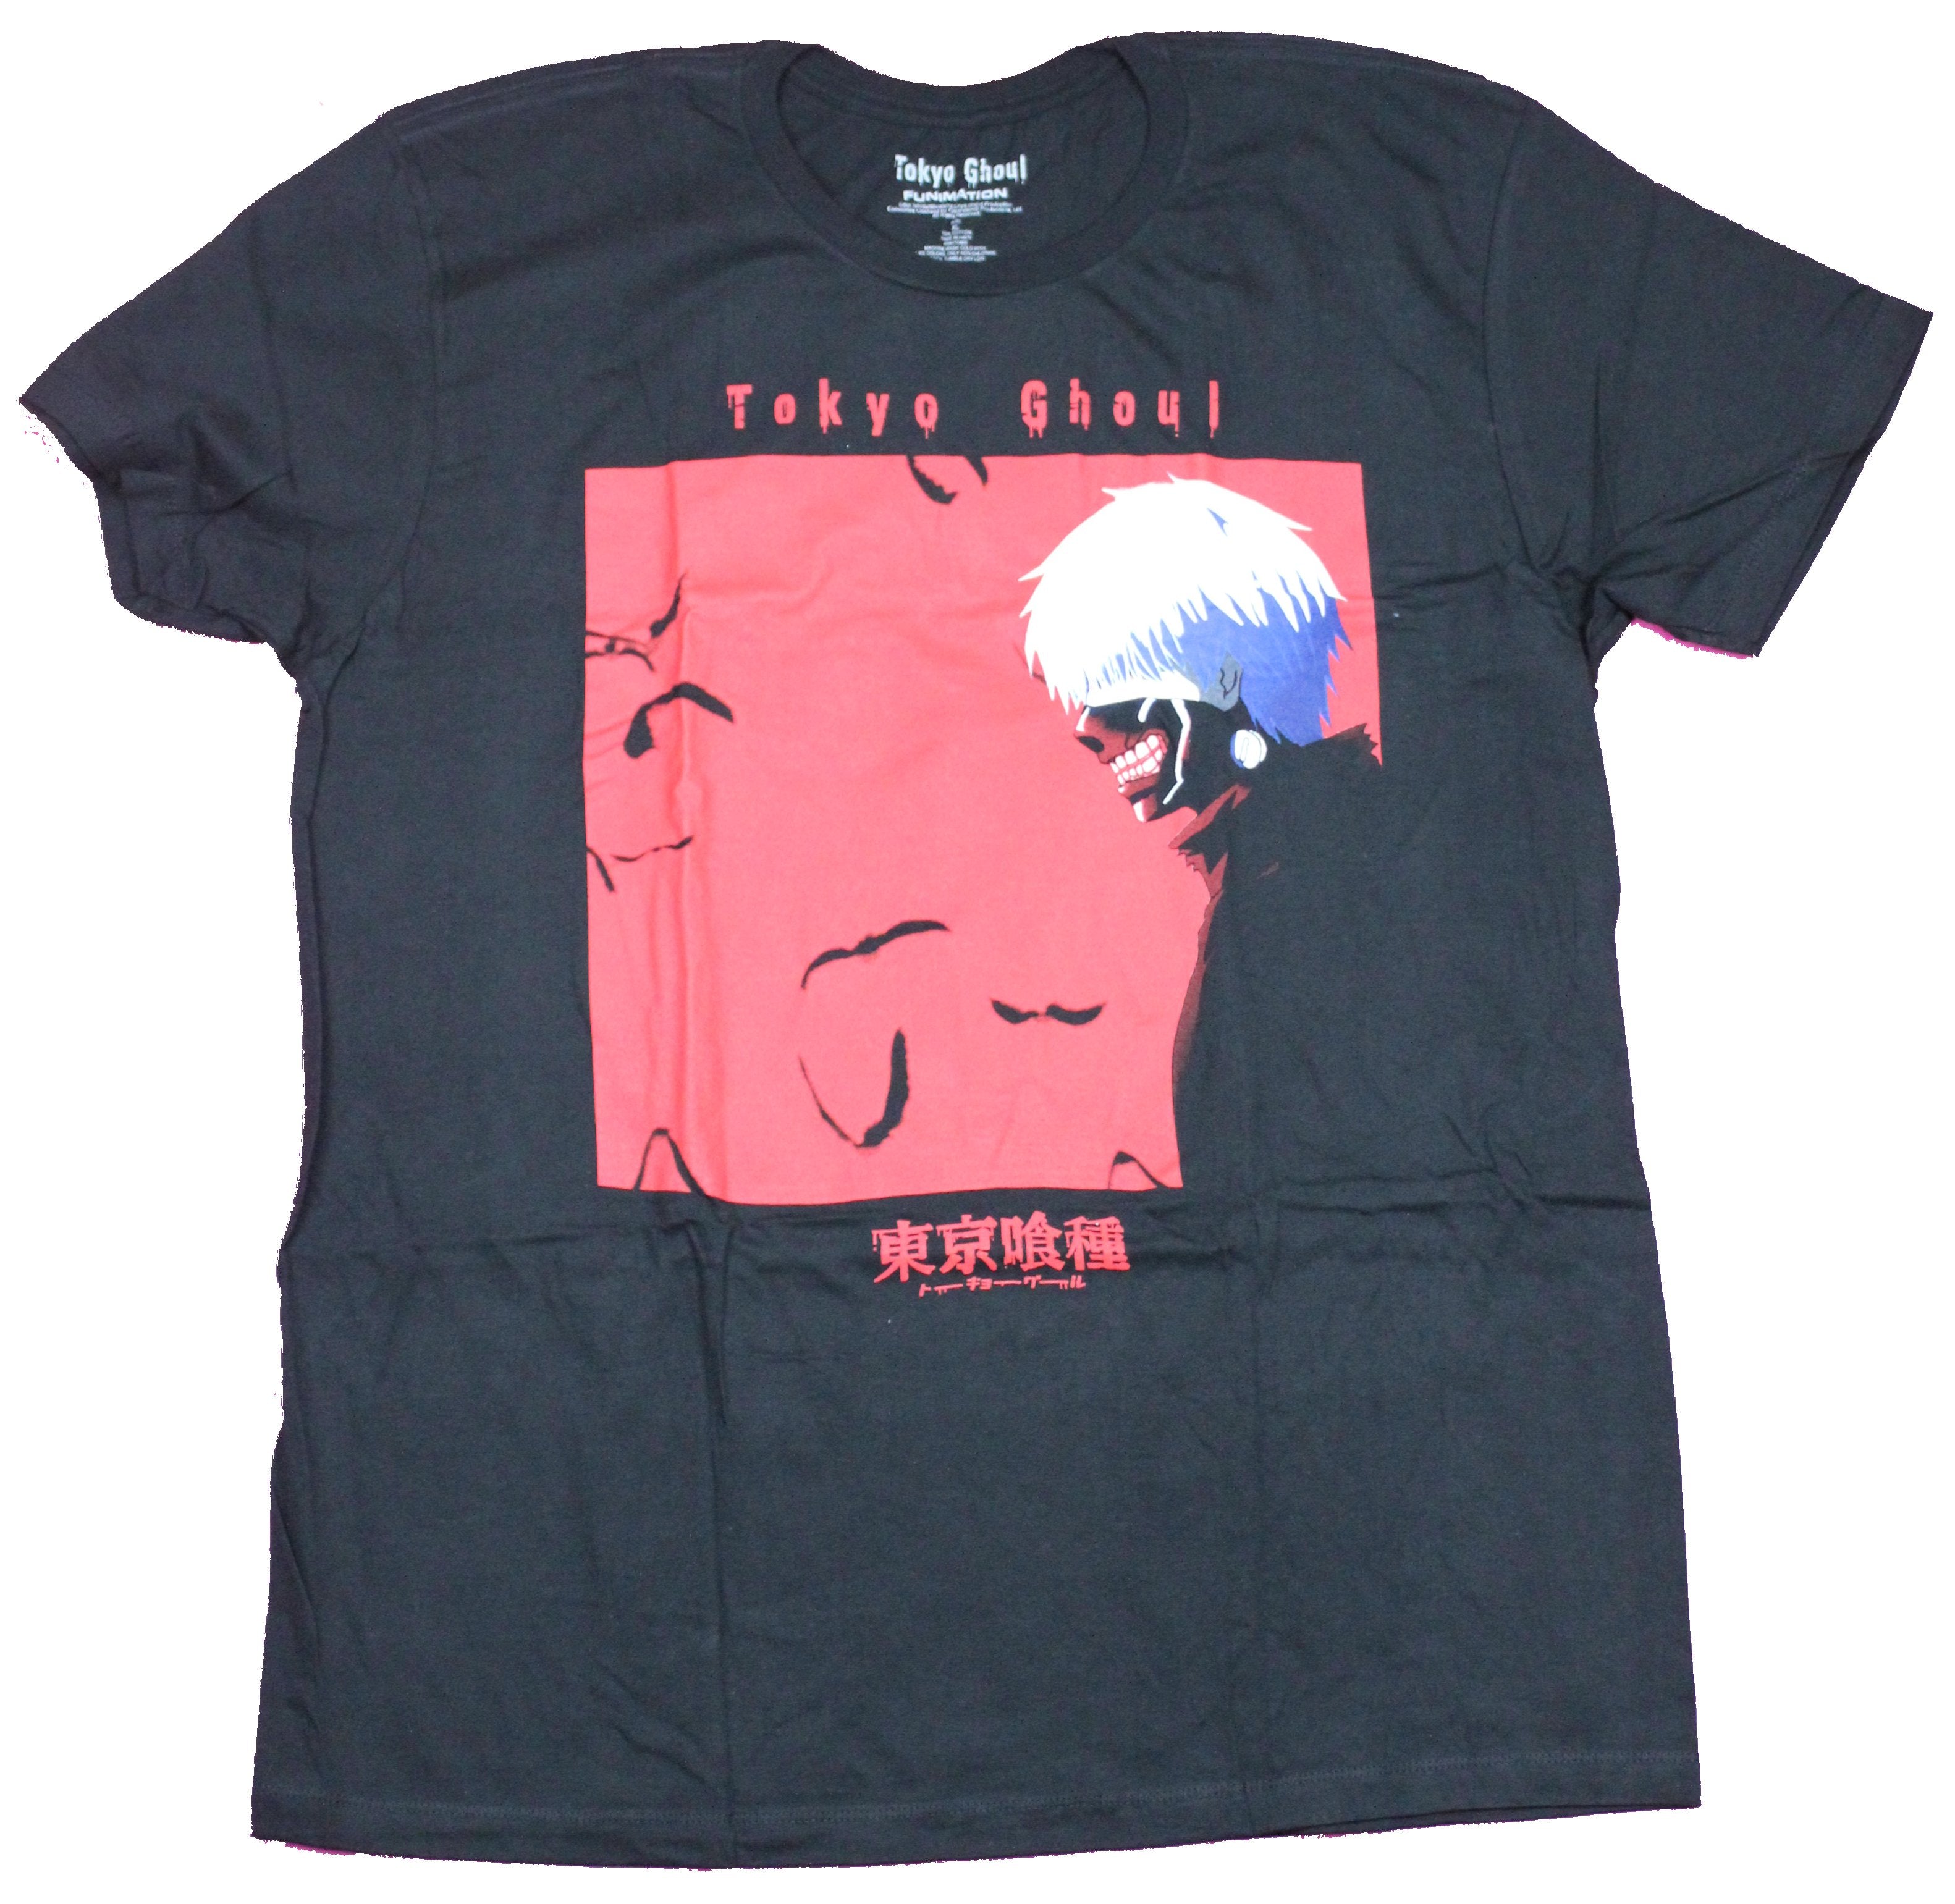 Tokyo Ghoul Mens T-Shirt - Red Box Ghoul Box Image